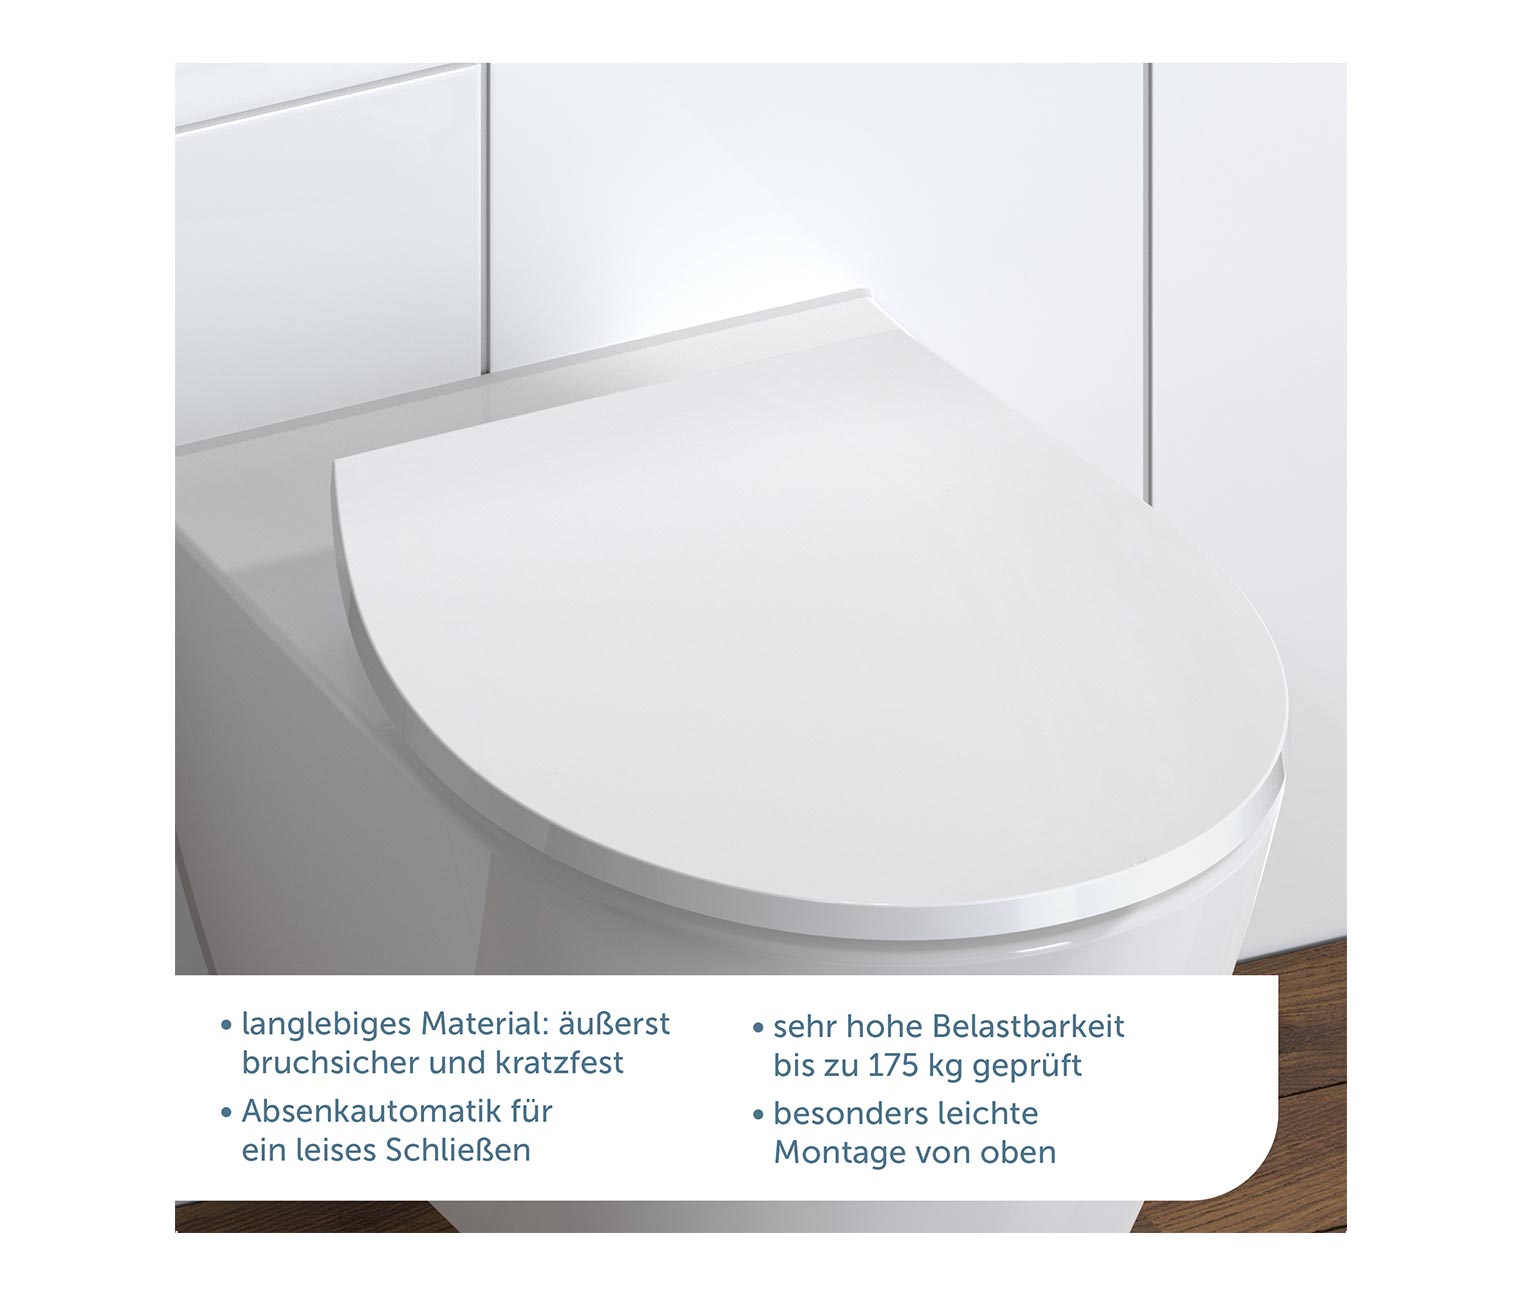 SCHÜTTE Duroplast WC-Sitz mit LED Nachtlicht online bestellen bei Tchibo  678038 | WCs & Toiletten